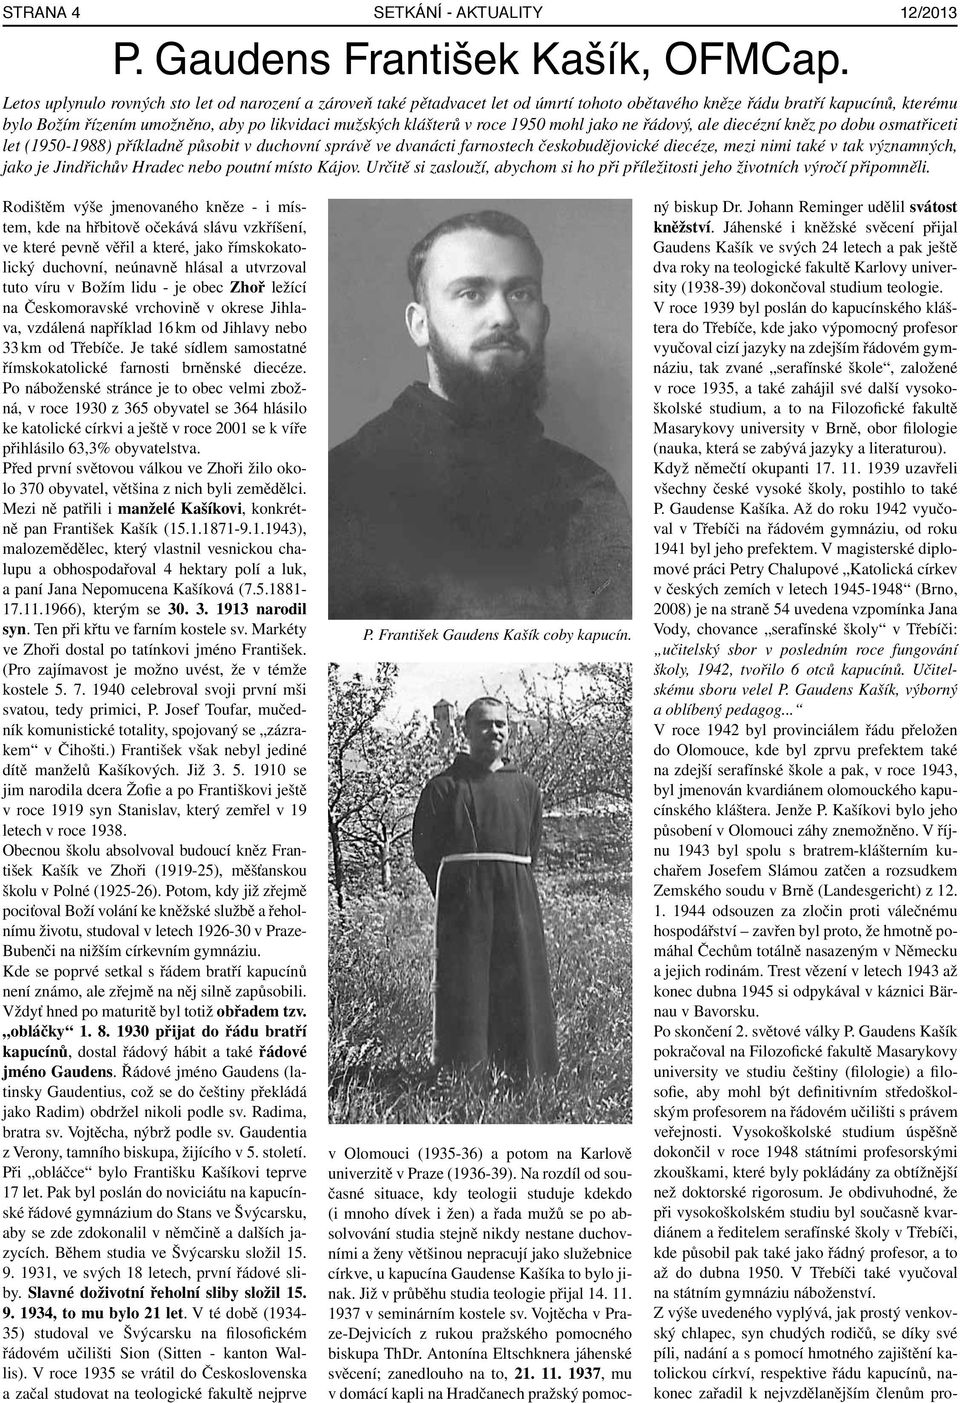 v roce 1950 mohl jako ne řádový, ale diecézní kněz po dobu osmatřiceti let (1950-1988) příkladně působit v duchovní správě ve dvanácti farnostech českobudějovické diecéze, mezi nimi také v tak